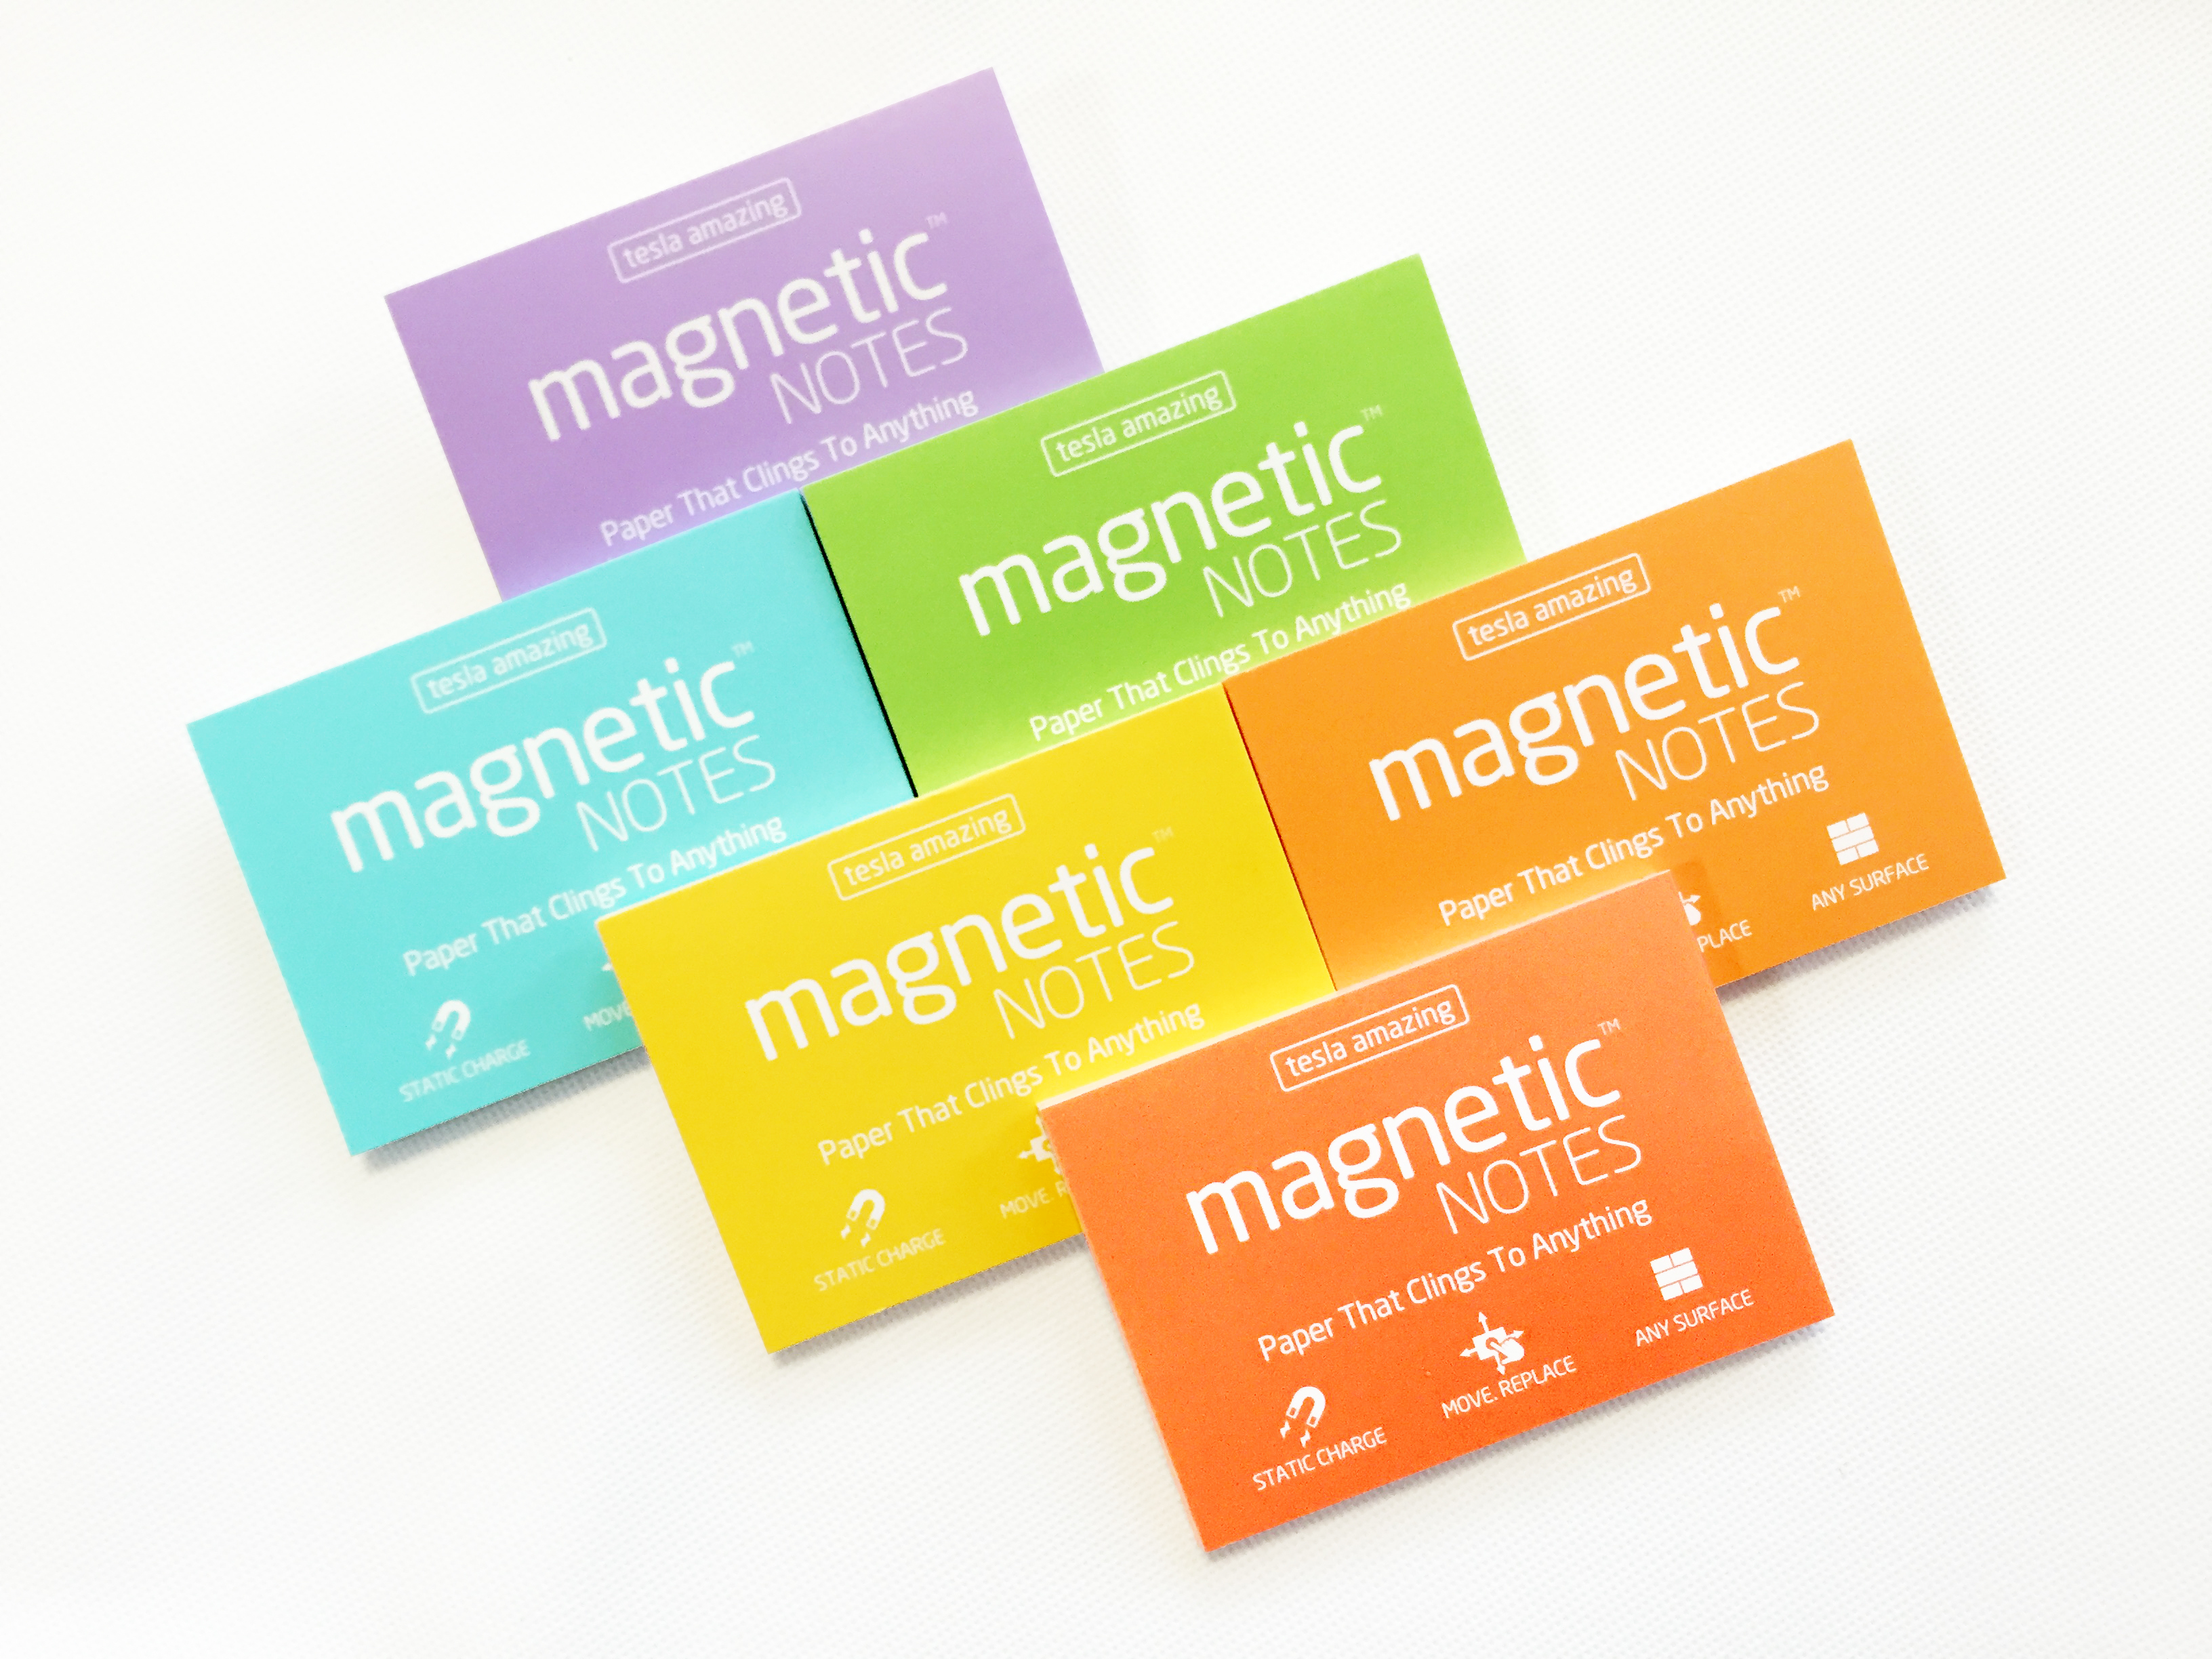 日本文具大賞受賞 魔法のふせん Magnetic Notes 春を感じるパステルカラーが新登場 従業員3人のベンチャー企業が5ヶ月で売上8万個を達成 株式会社ウインテックのプレスリリース